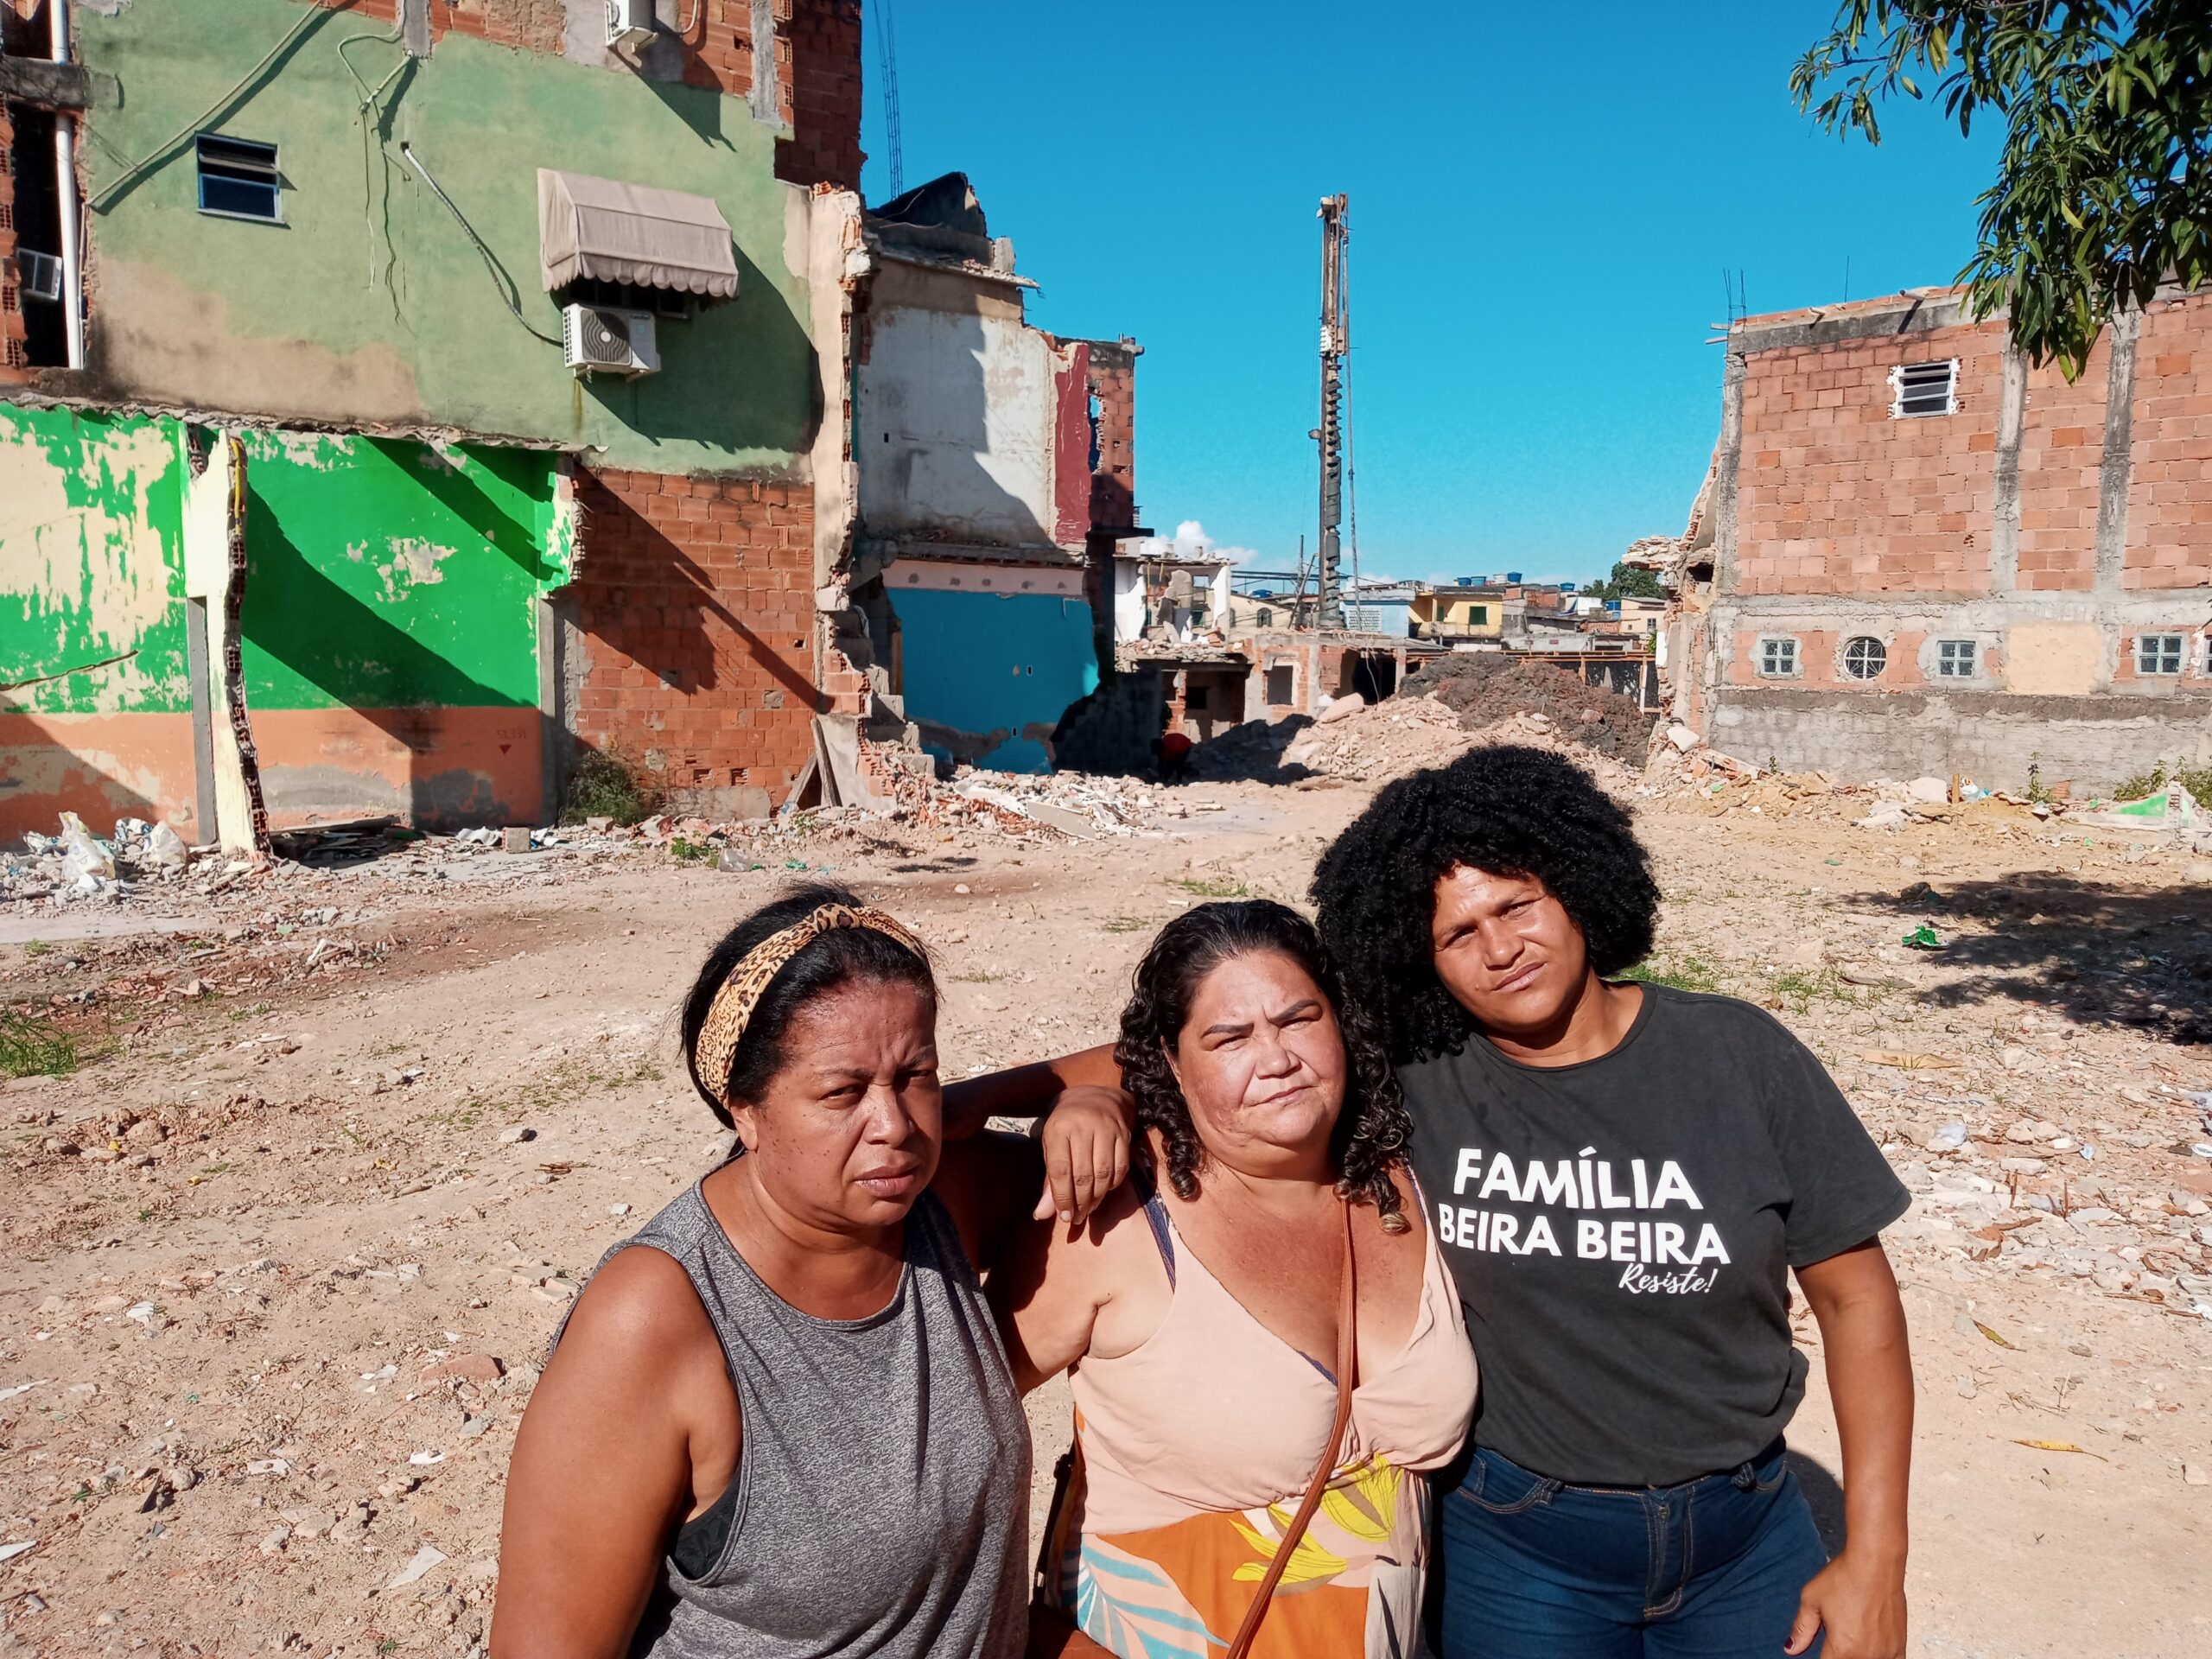 Da esquerda para direita, as moradoras e ativistas Glaucia Quirino, Rose Silva, ambas da Favela do Lixão, e Veinha, moradora da Beira-Beira. Foto: Fabio Leon